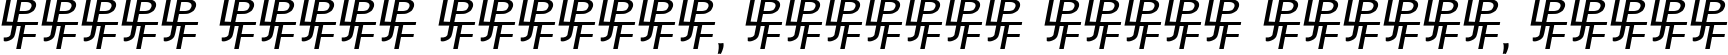 Пример написания шрифтом Birmingham Sans Serif текста на белорусском